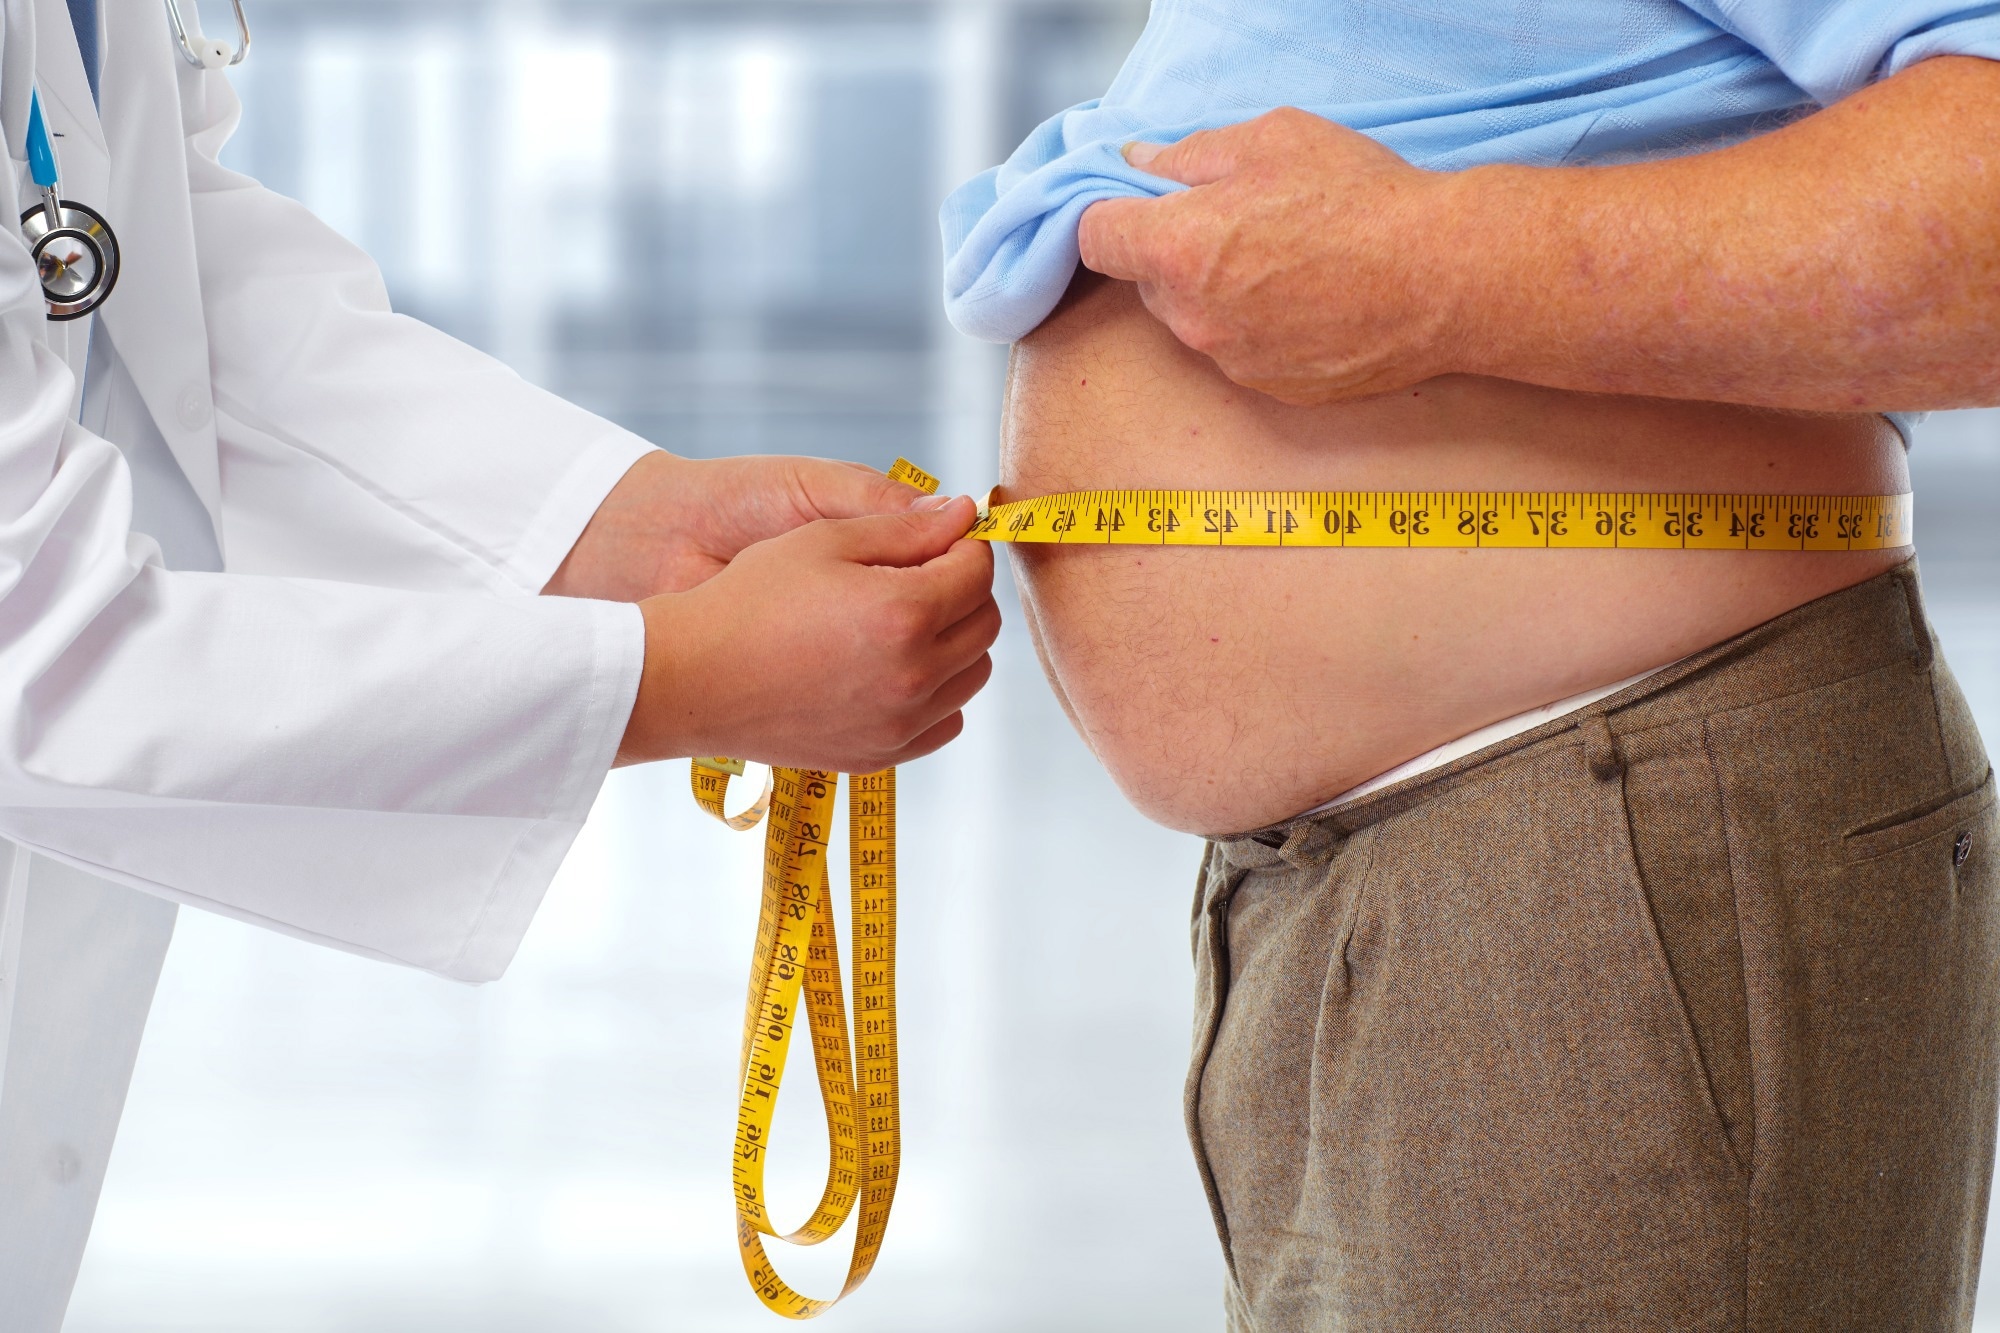 La obesidad golpea por debajo del cinturón: Un estudio revela la relación entre la obesidad y la infertilidad masculina